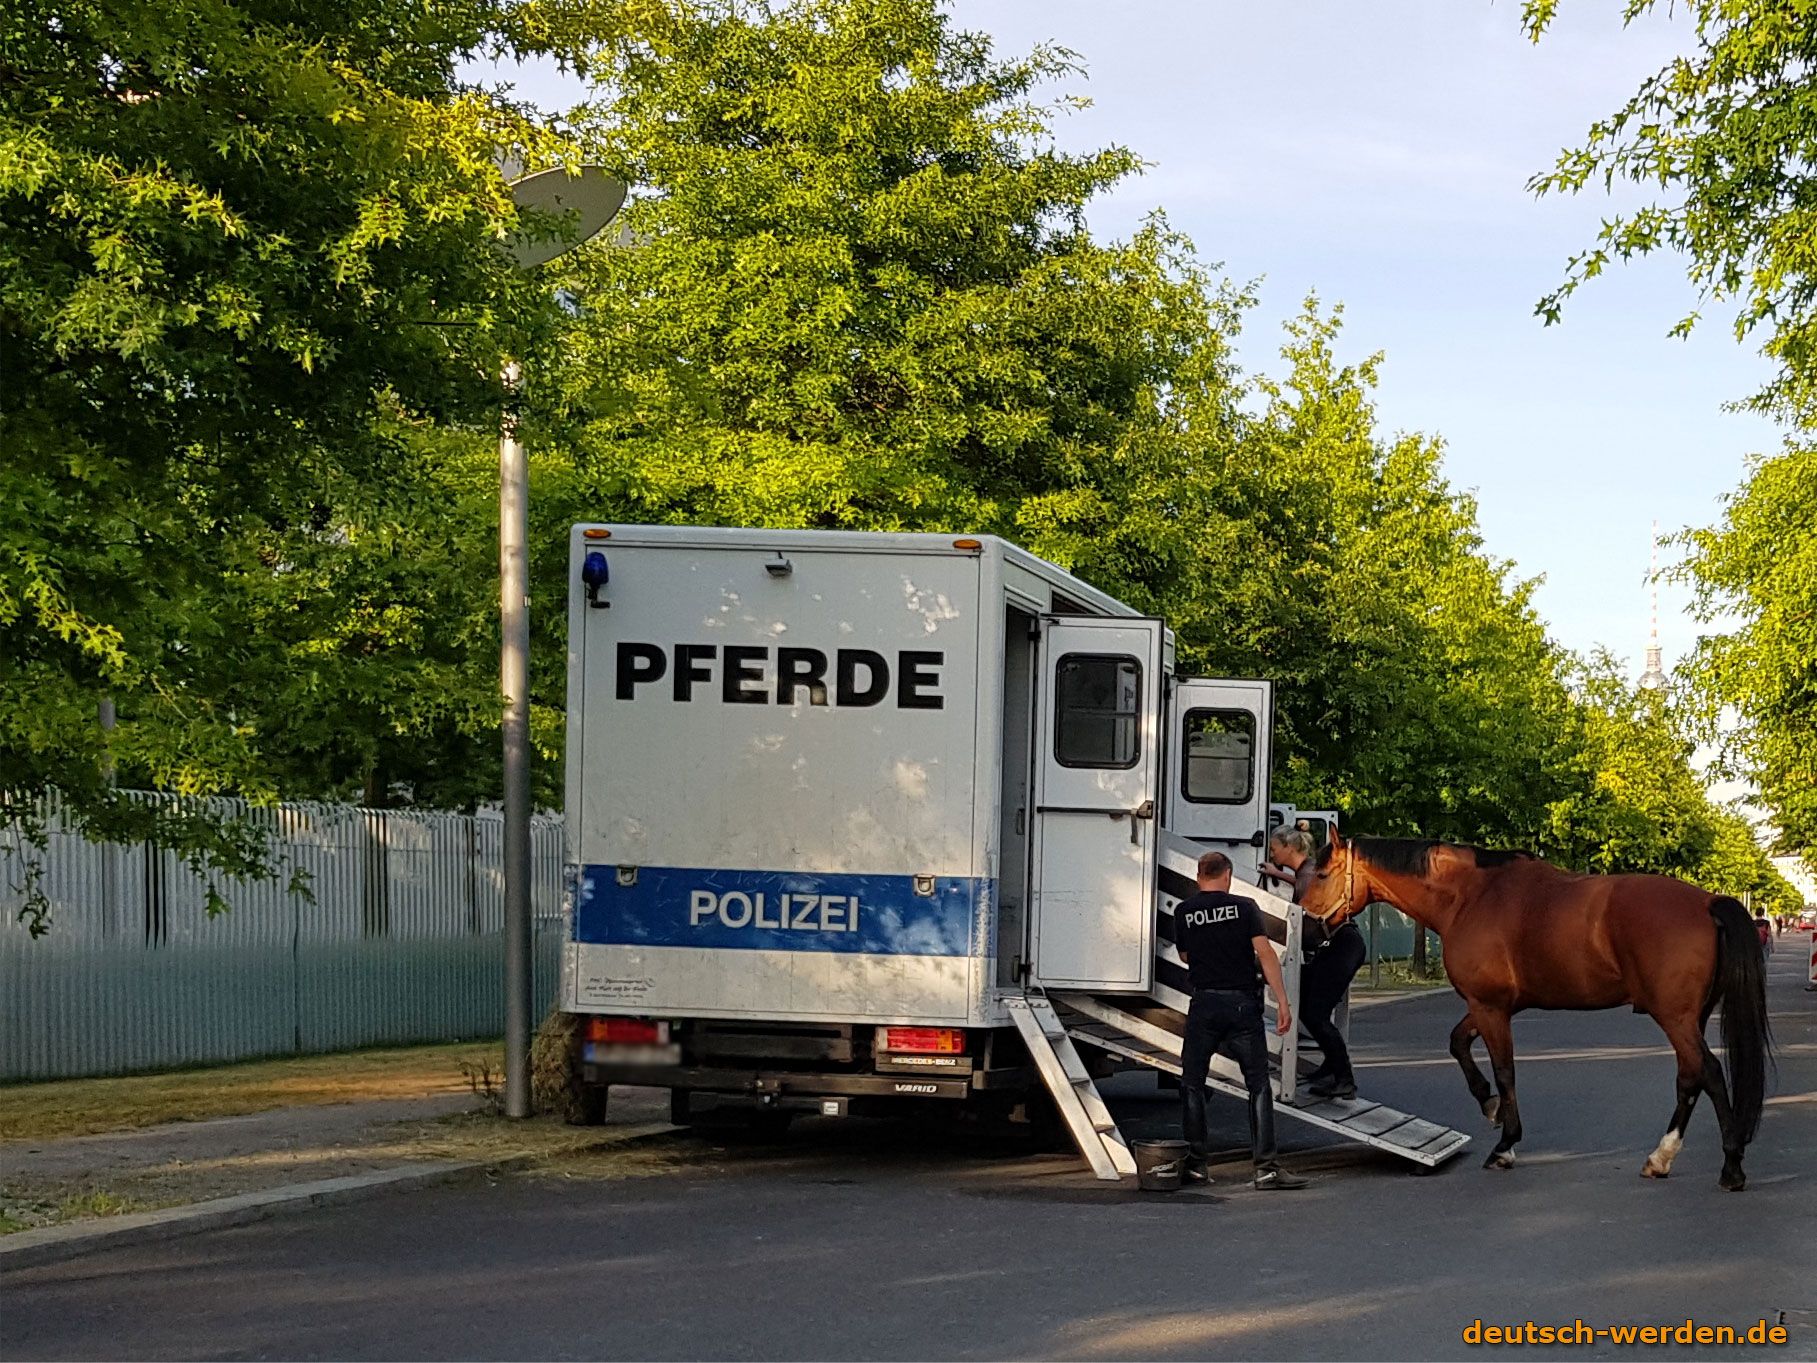 Polizei Pferde